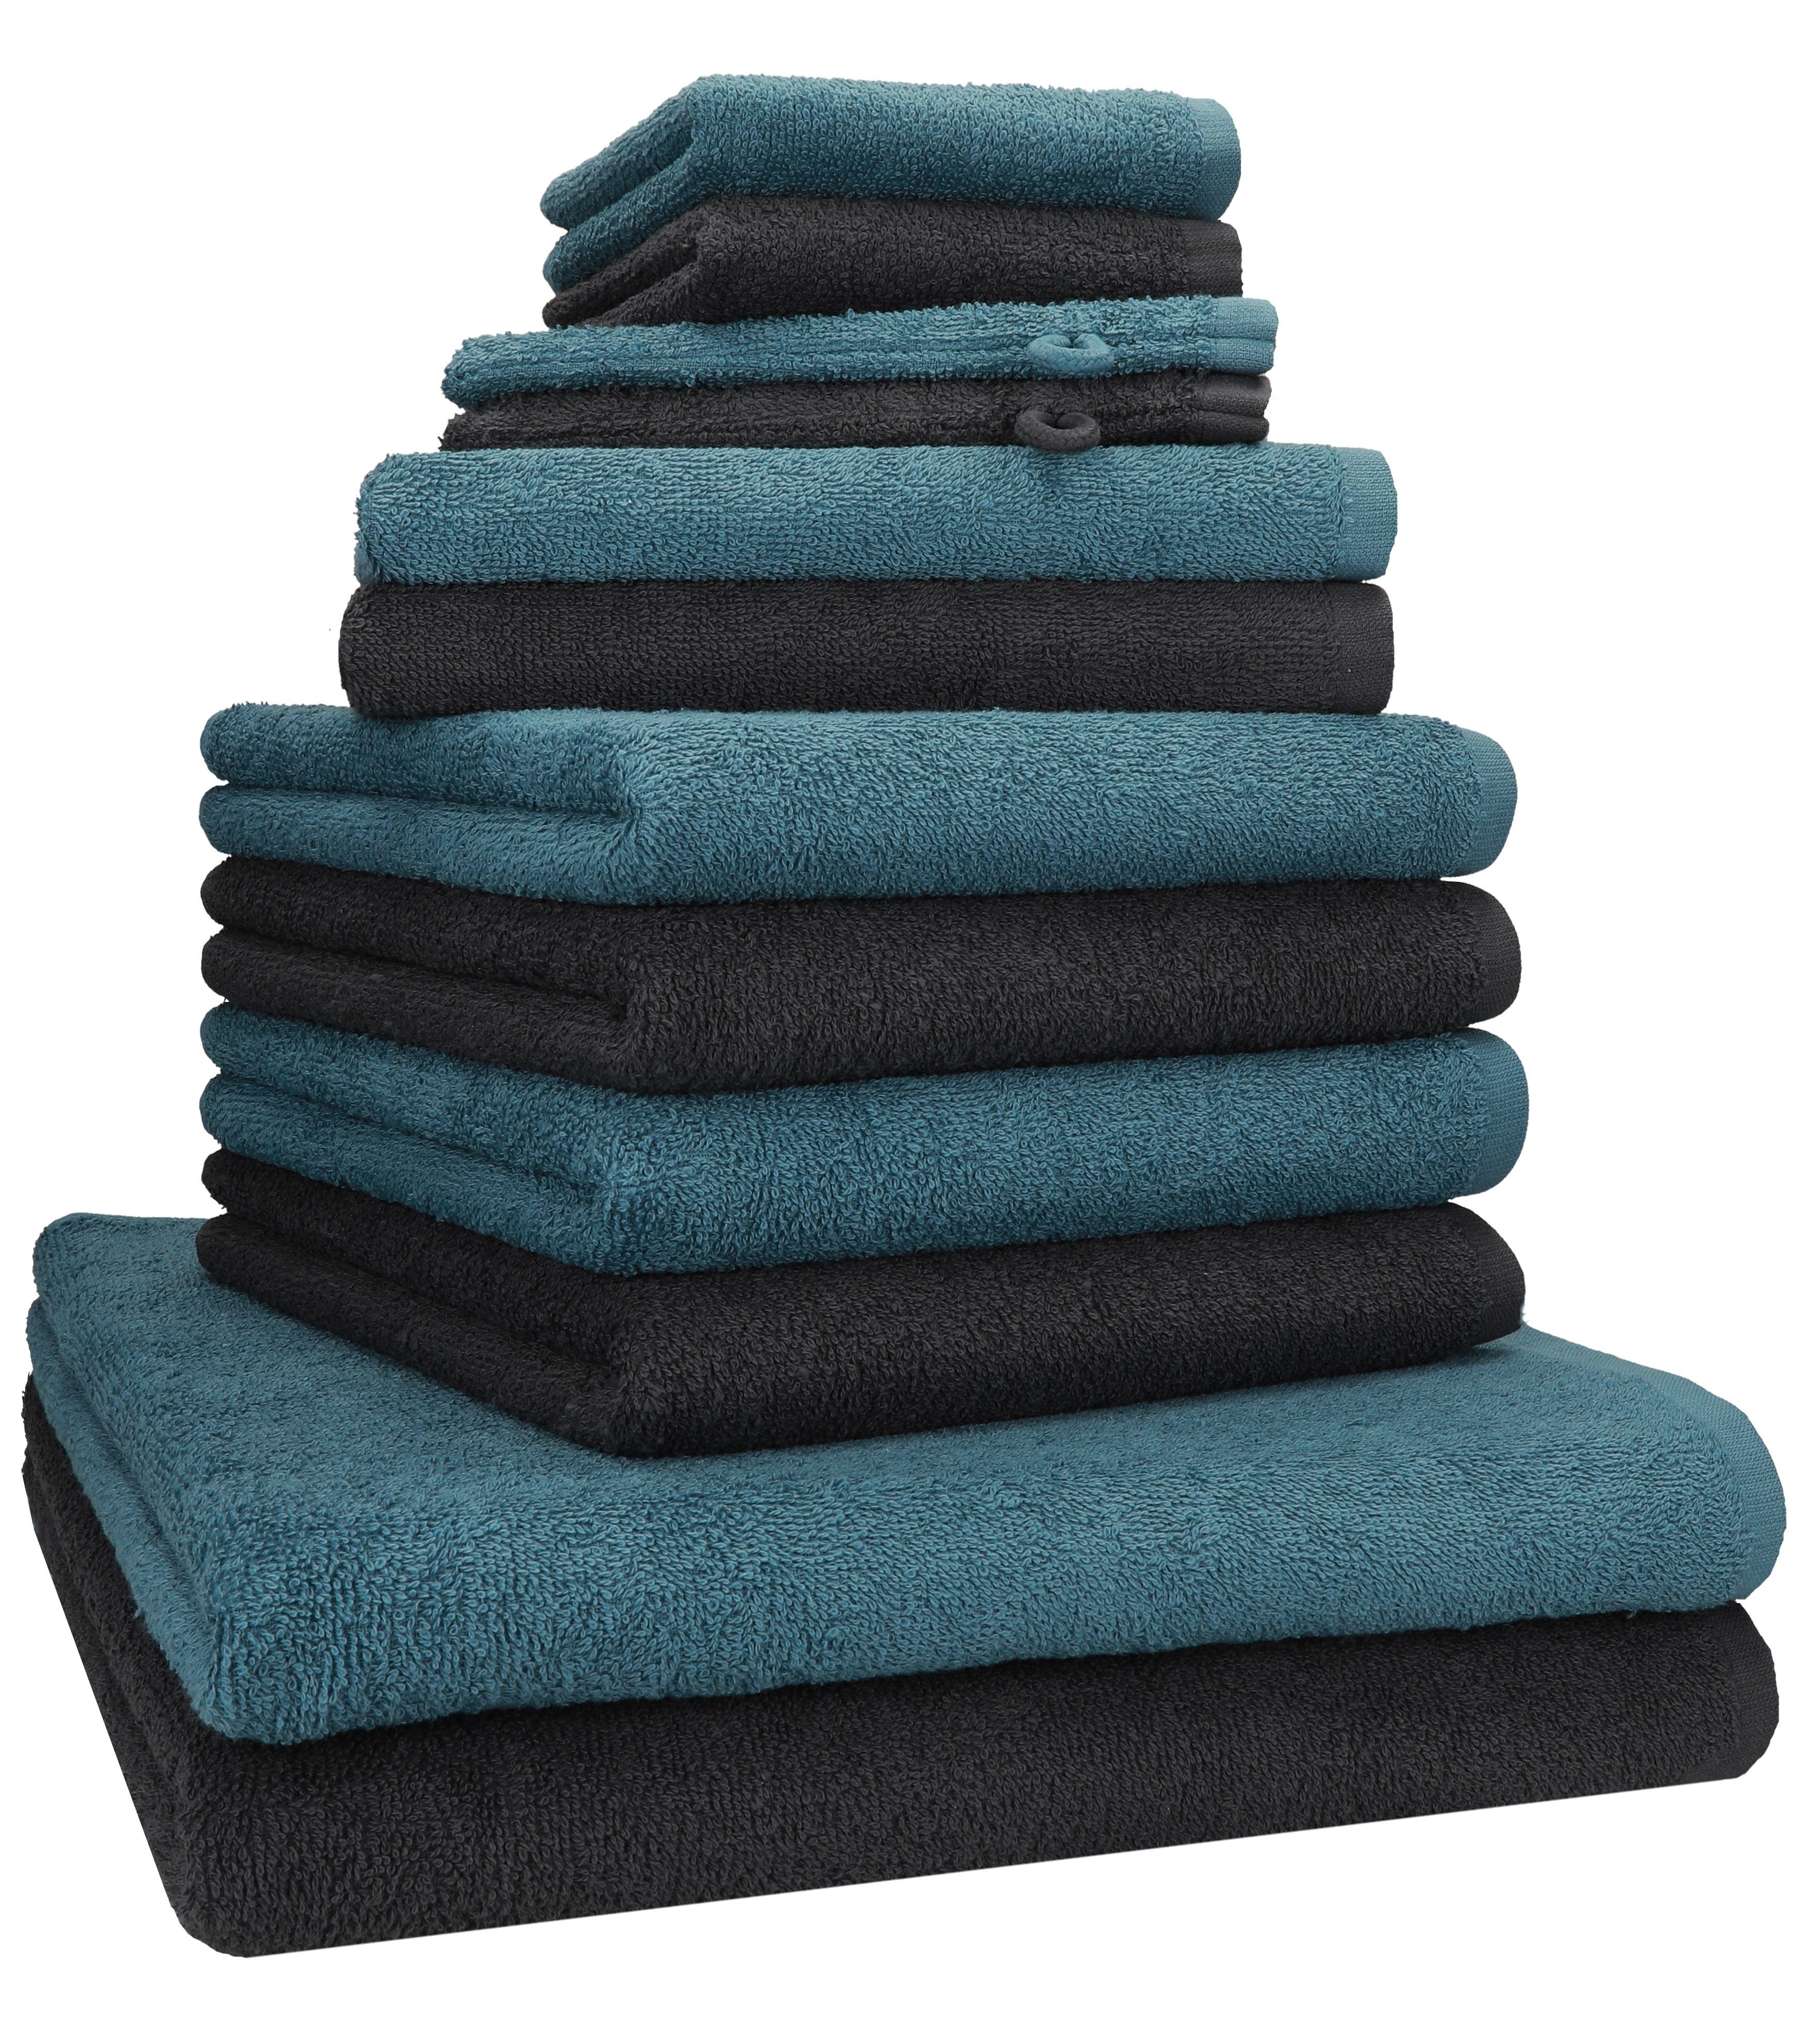 Betz Handtuch Set 12 TLG. Baumwolle Farbe - Handtuch Set 100% BERLIN graphit taubenblau